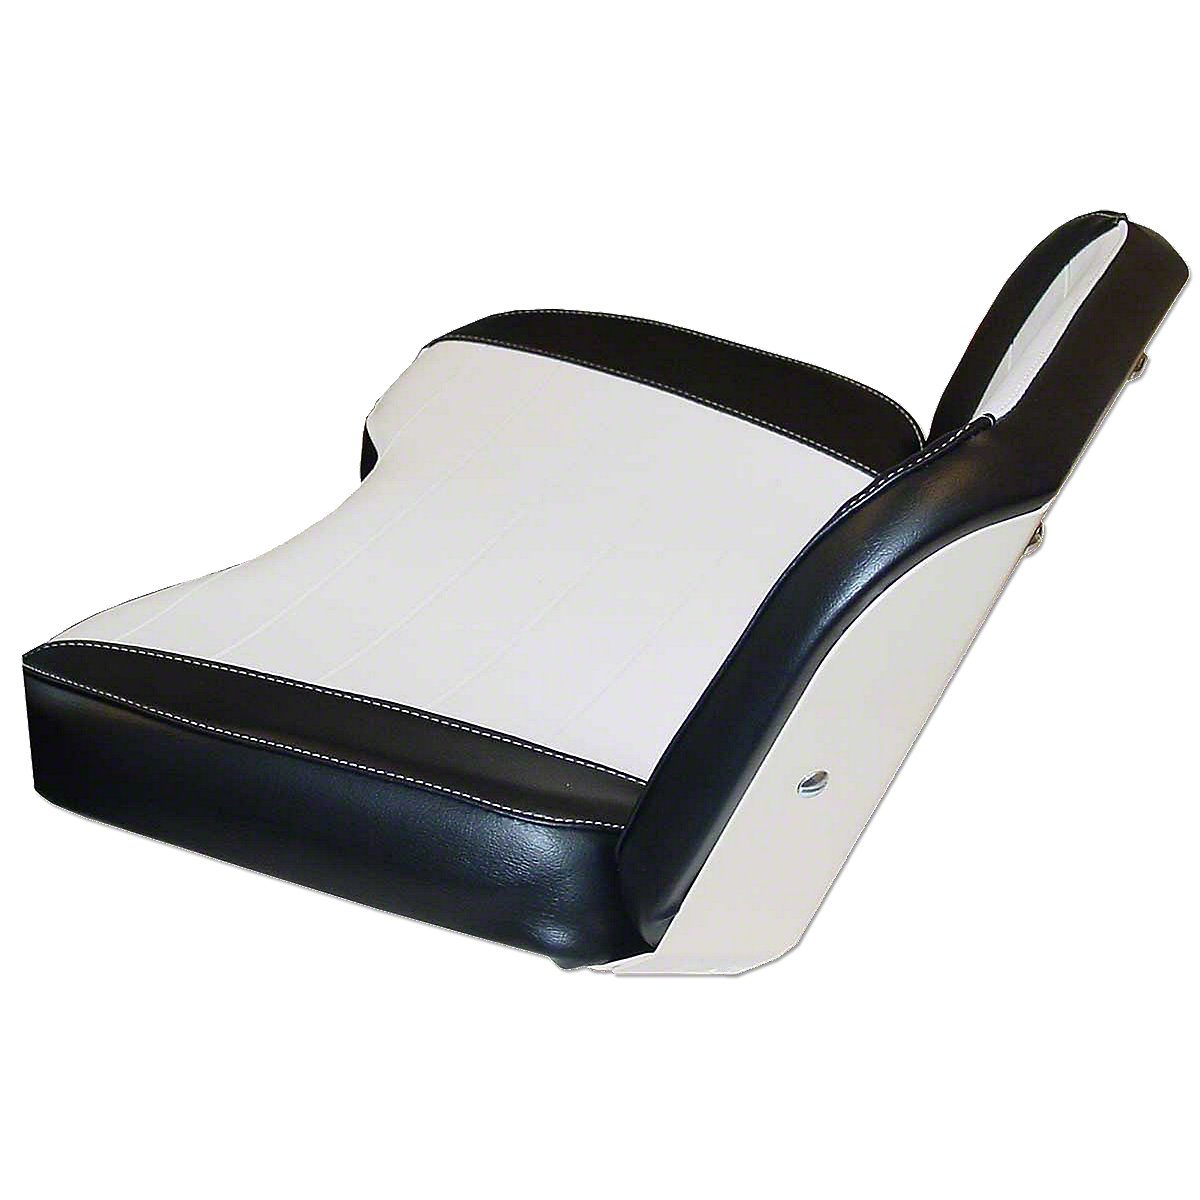 Seat Cushion Assembly For Allis Chalmers: 190XT, 170, 175, 180, 185, 190, 210, 220, D10, D12, D14, D15, D17, D19, D21.